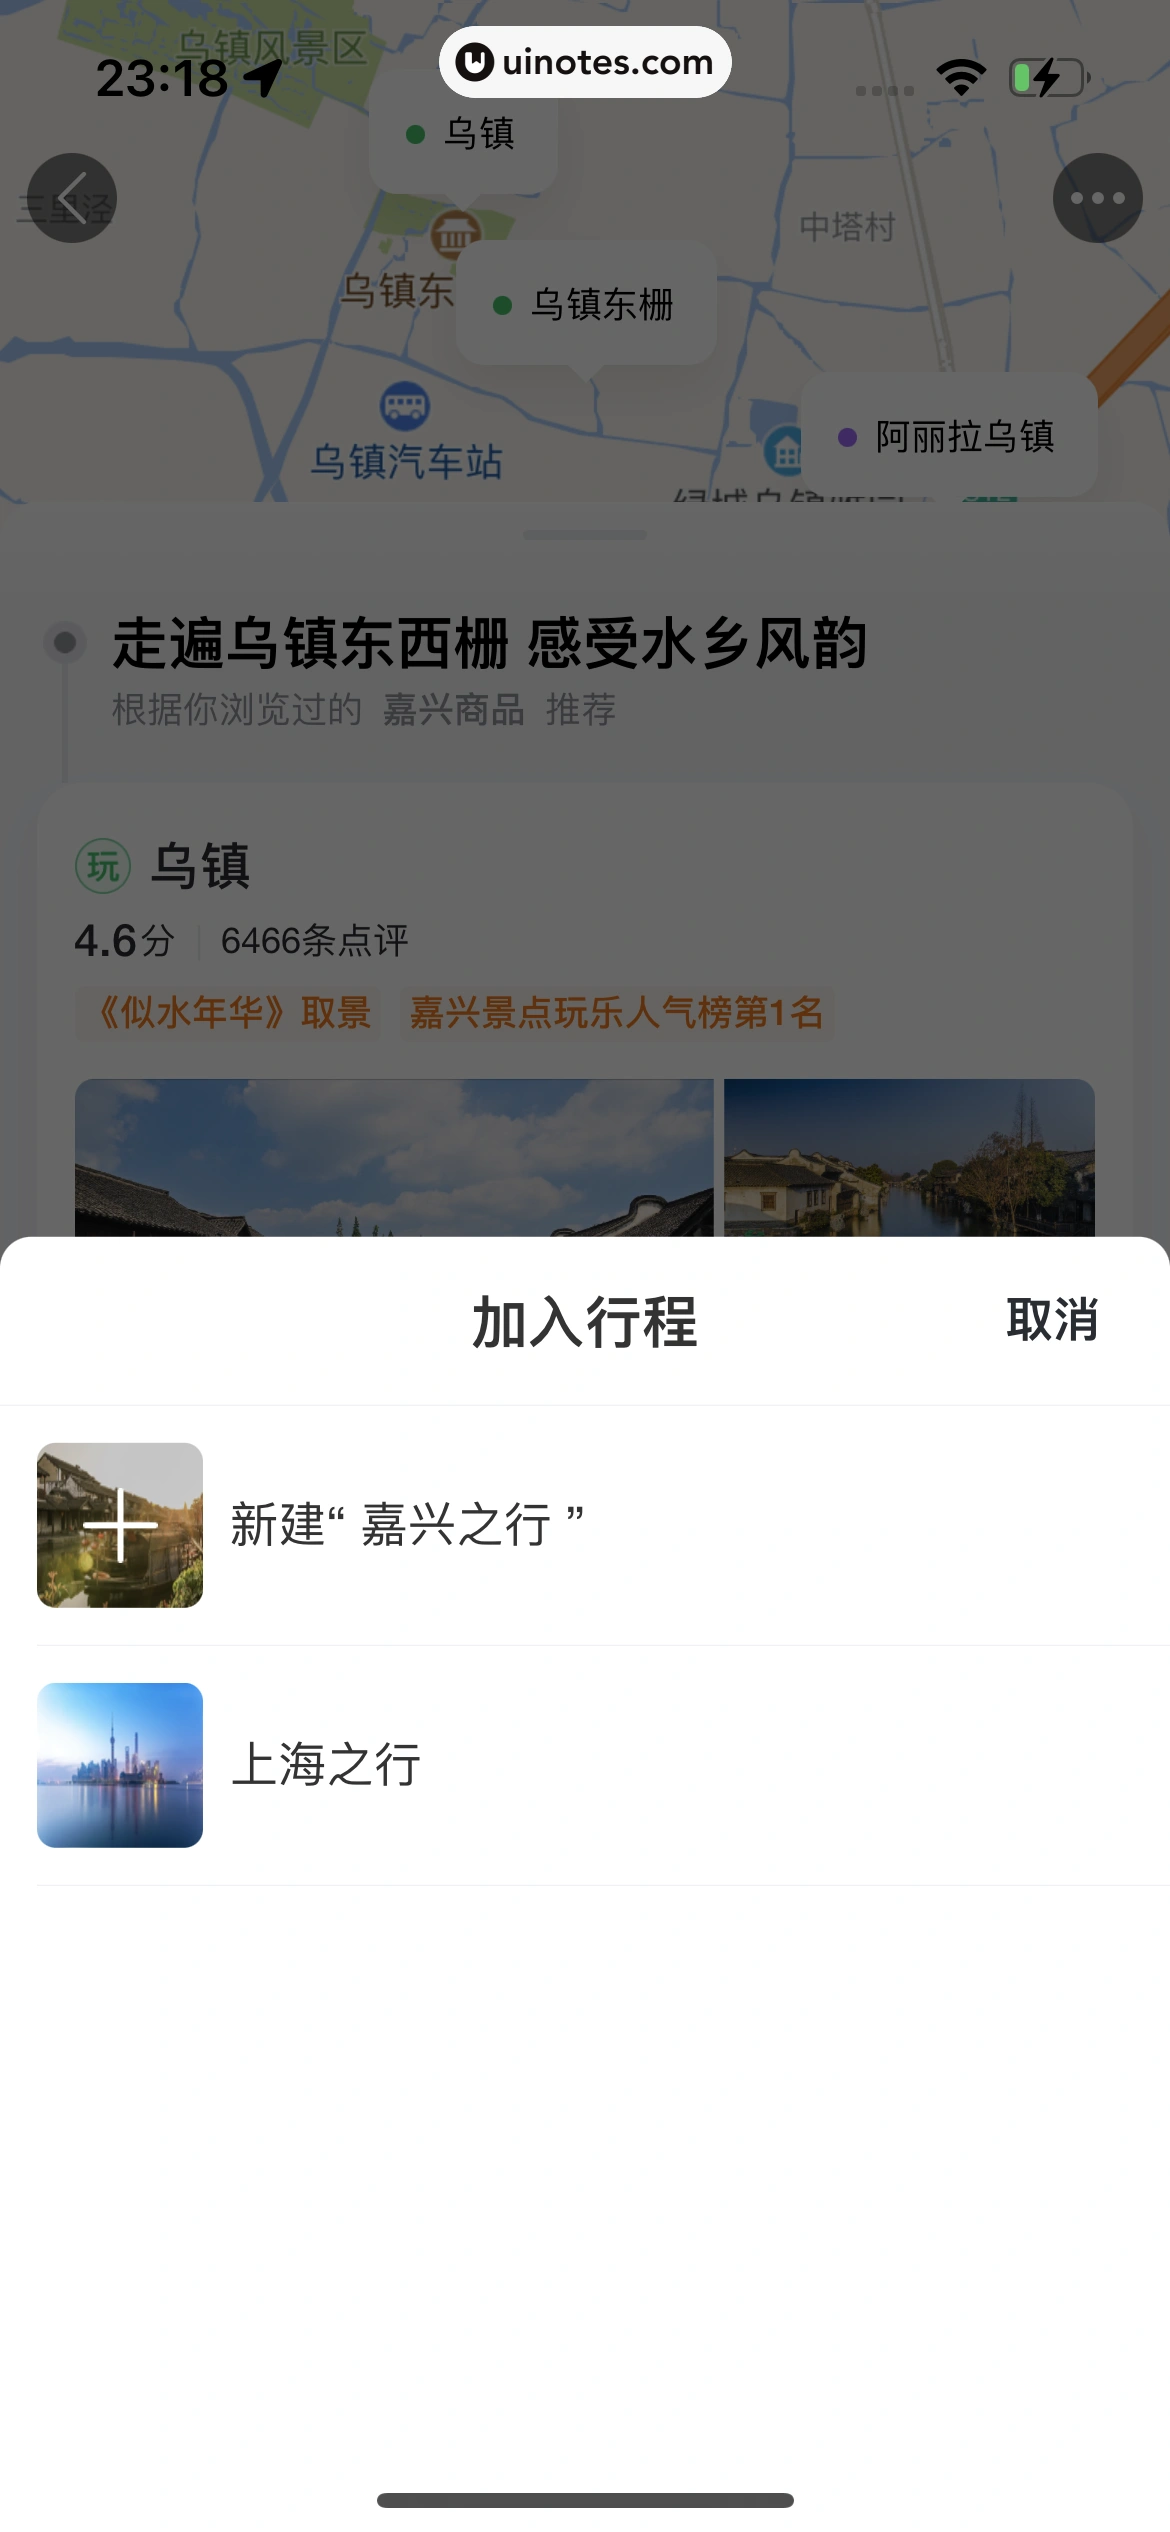 飞猪旅行 App 截图 840 - UI Notes